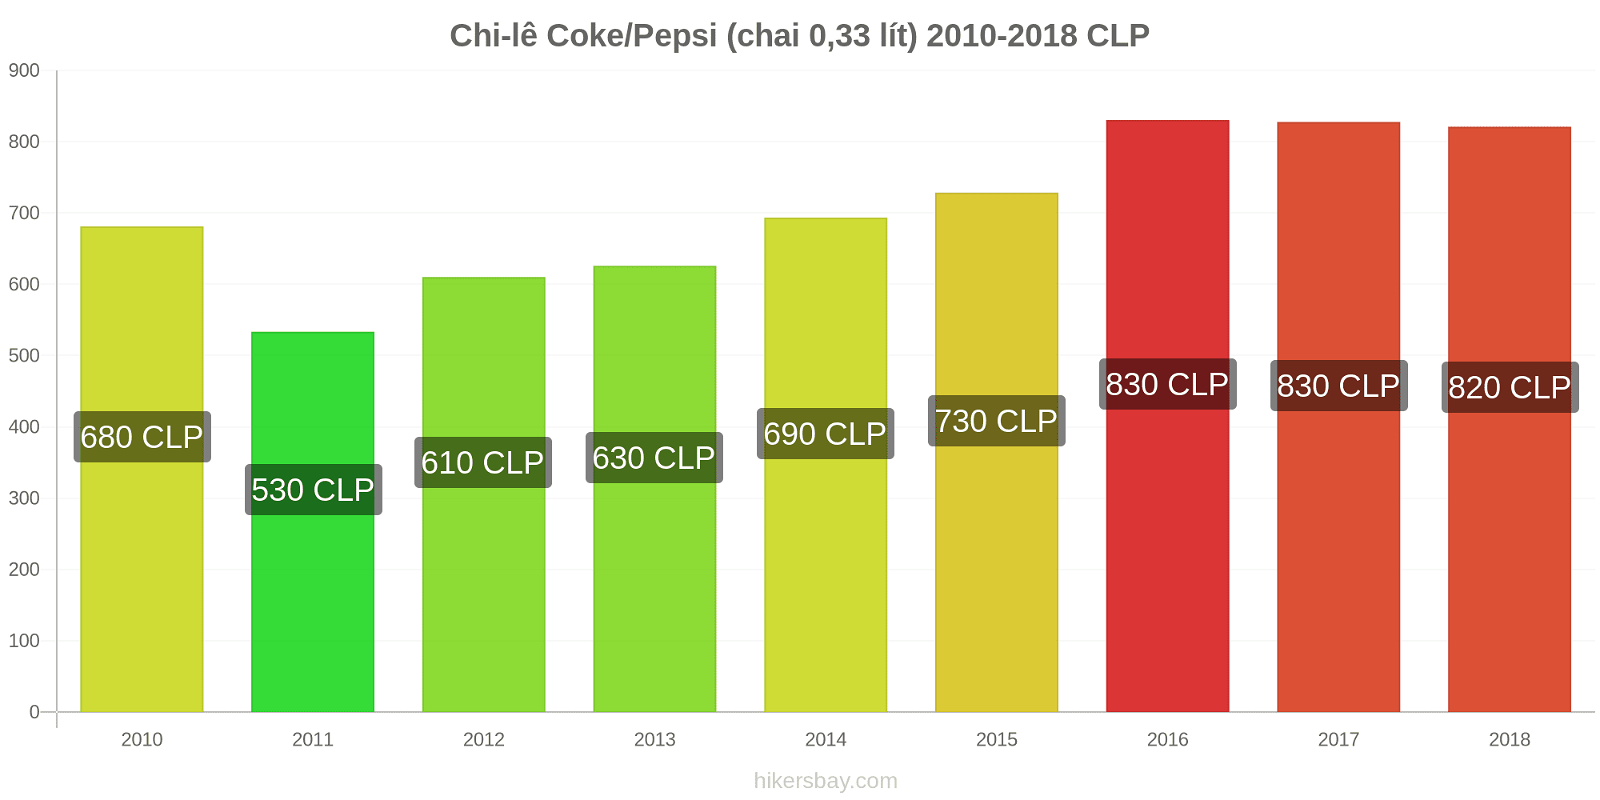 Chi-lê thay đổi giá cả Coca-Cola/Pepsi (chai 0.33 lít) hikersbay.com